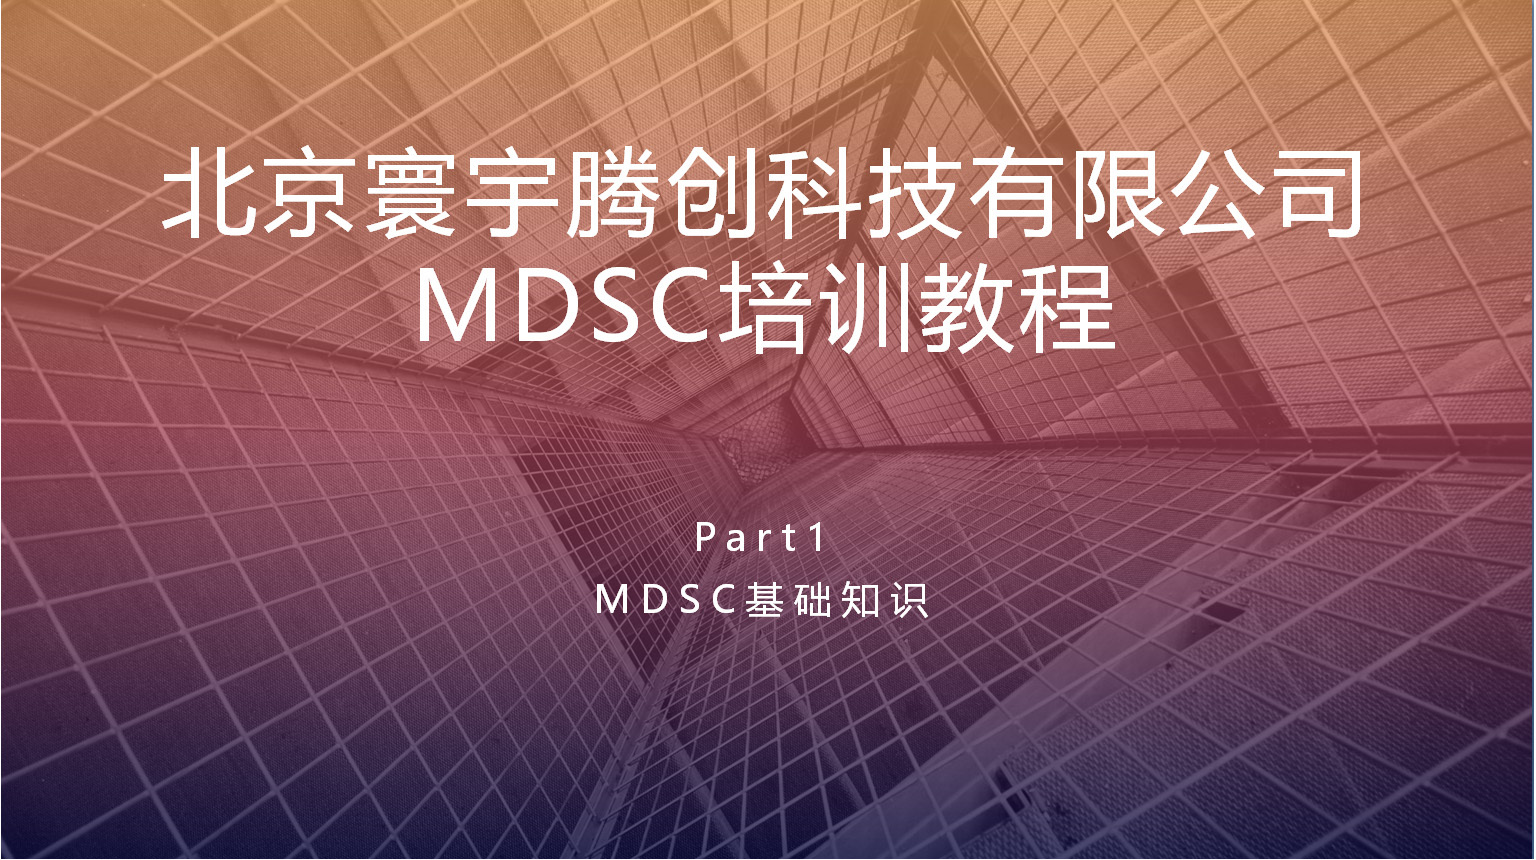 MDSC原理以及操作培训